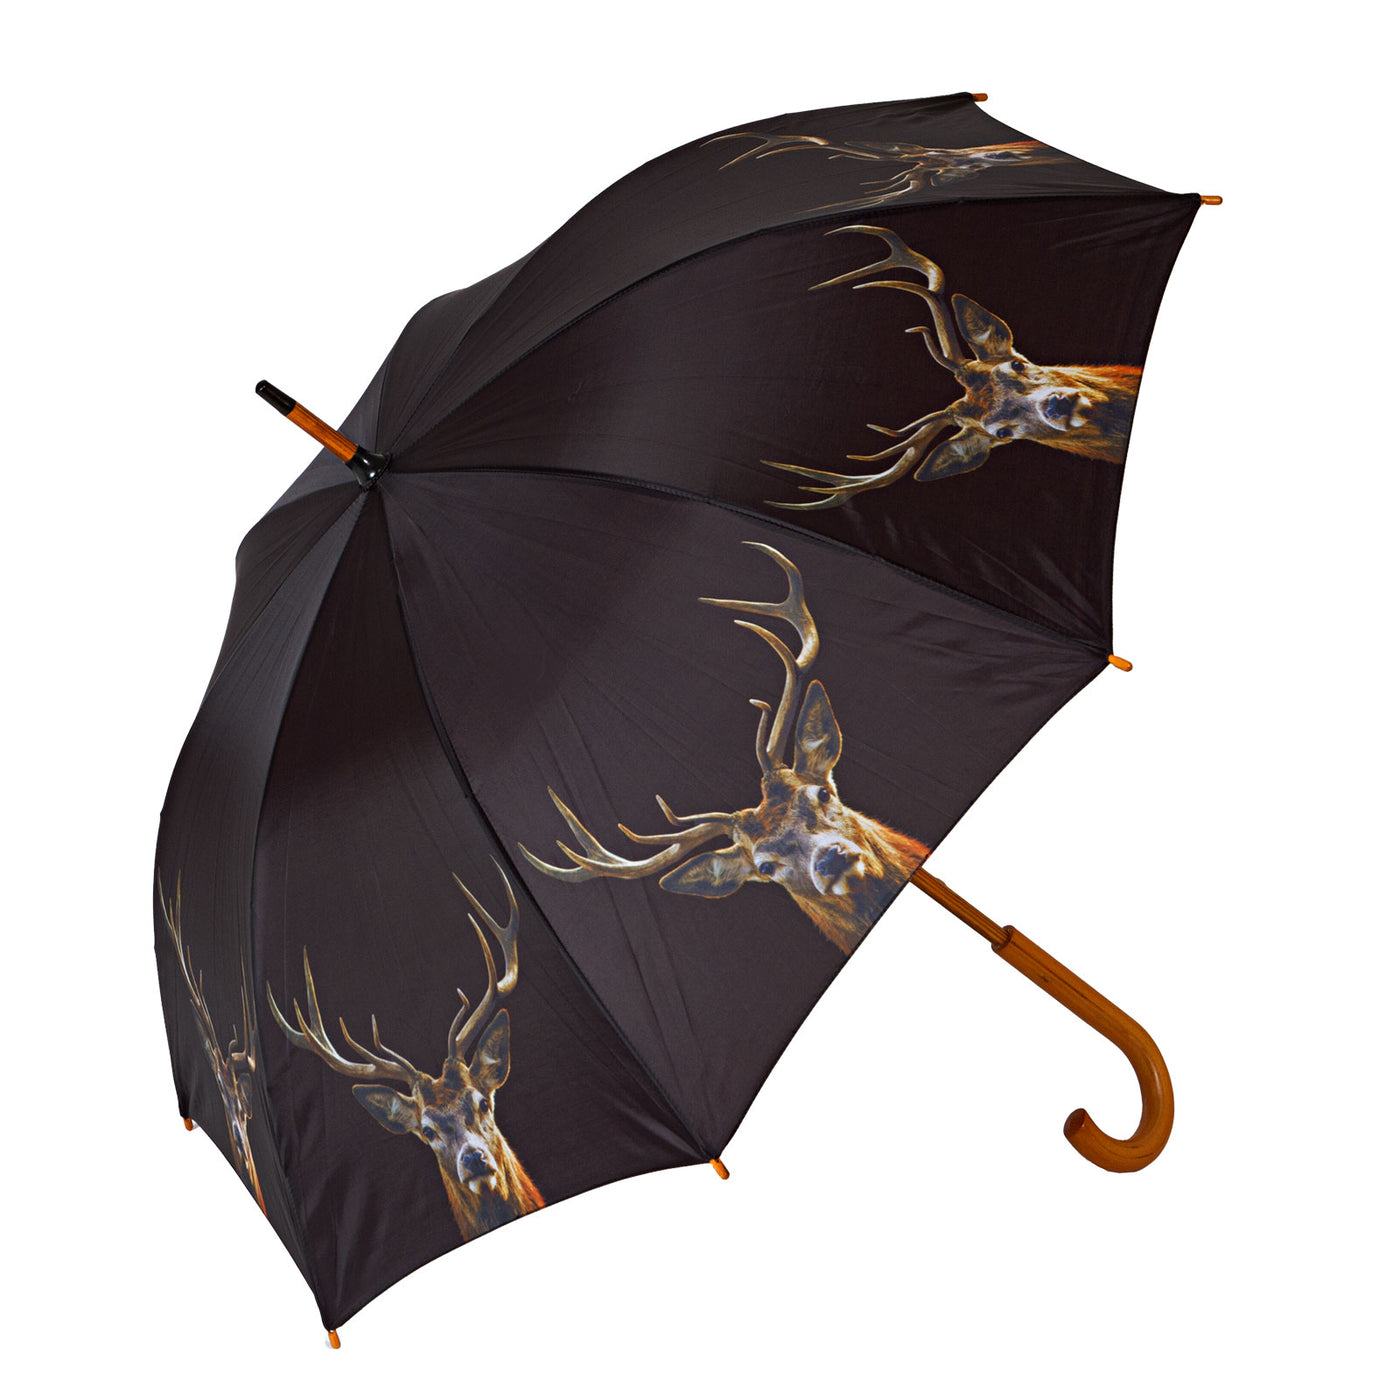 Paraplu met hert afbeelding